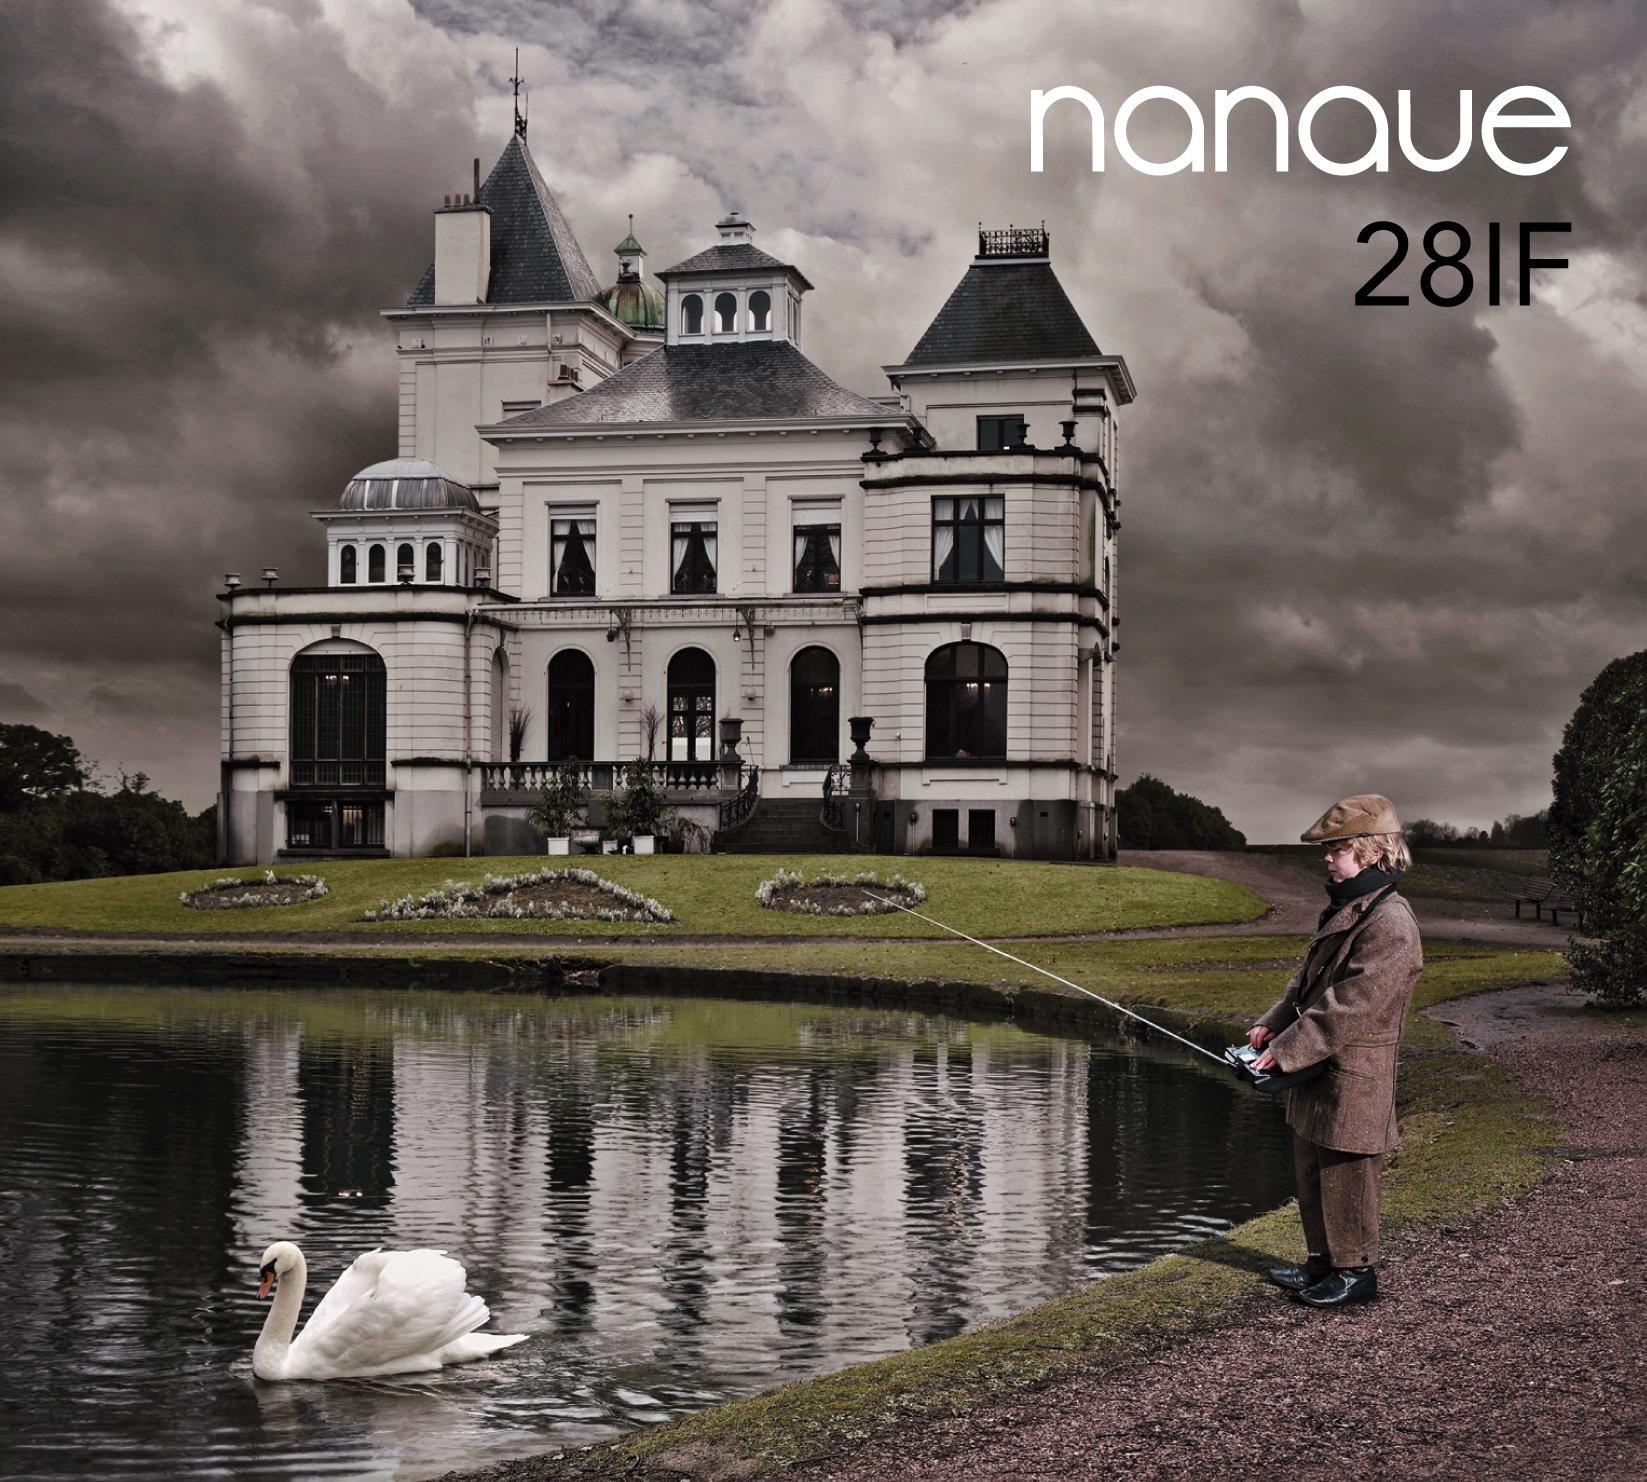 Nanaue 28IF cover by Gert de Taeye